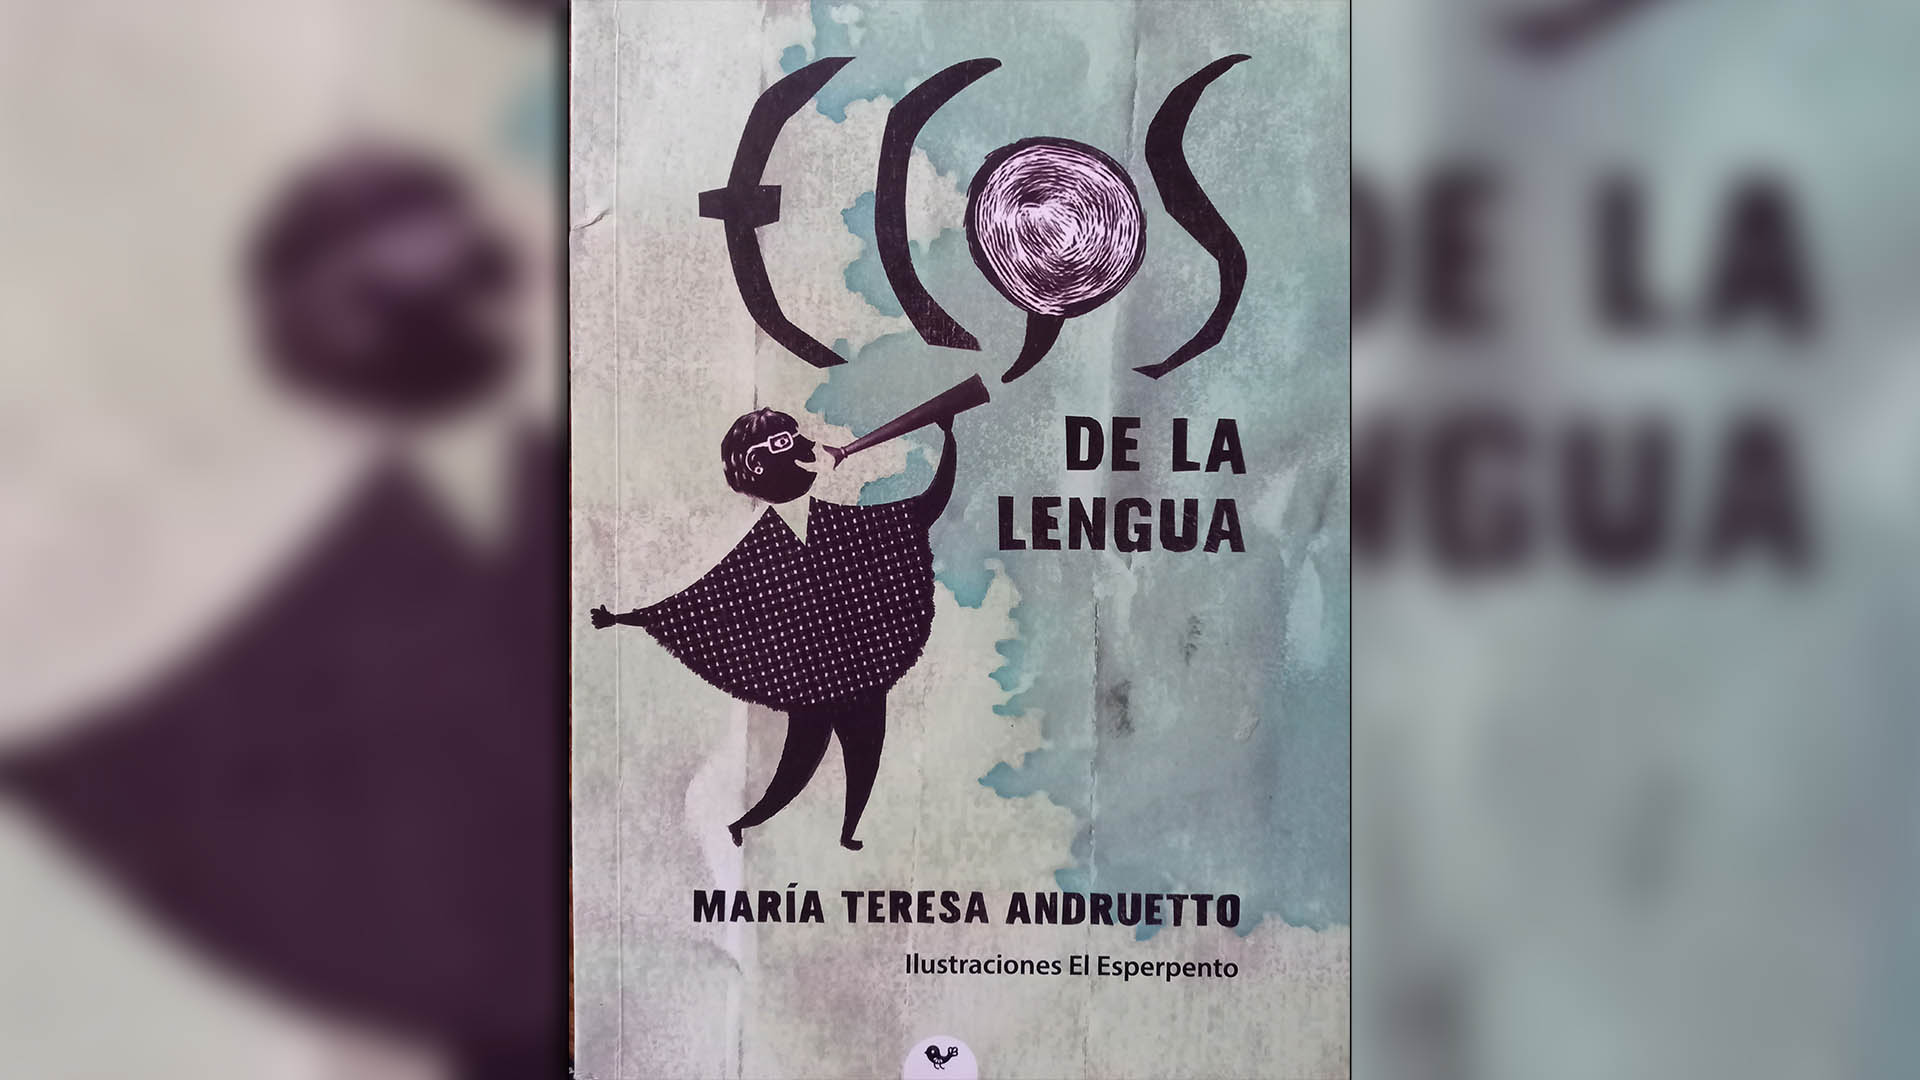 "Ecos de la lengua", de María Teresa Andruetto, publicado por Ediciones De la Terraza